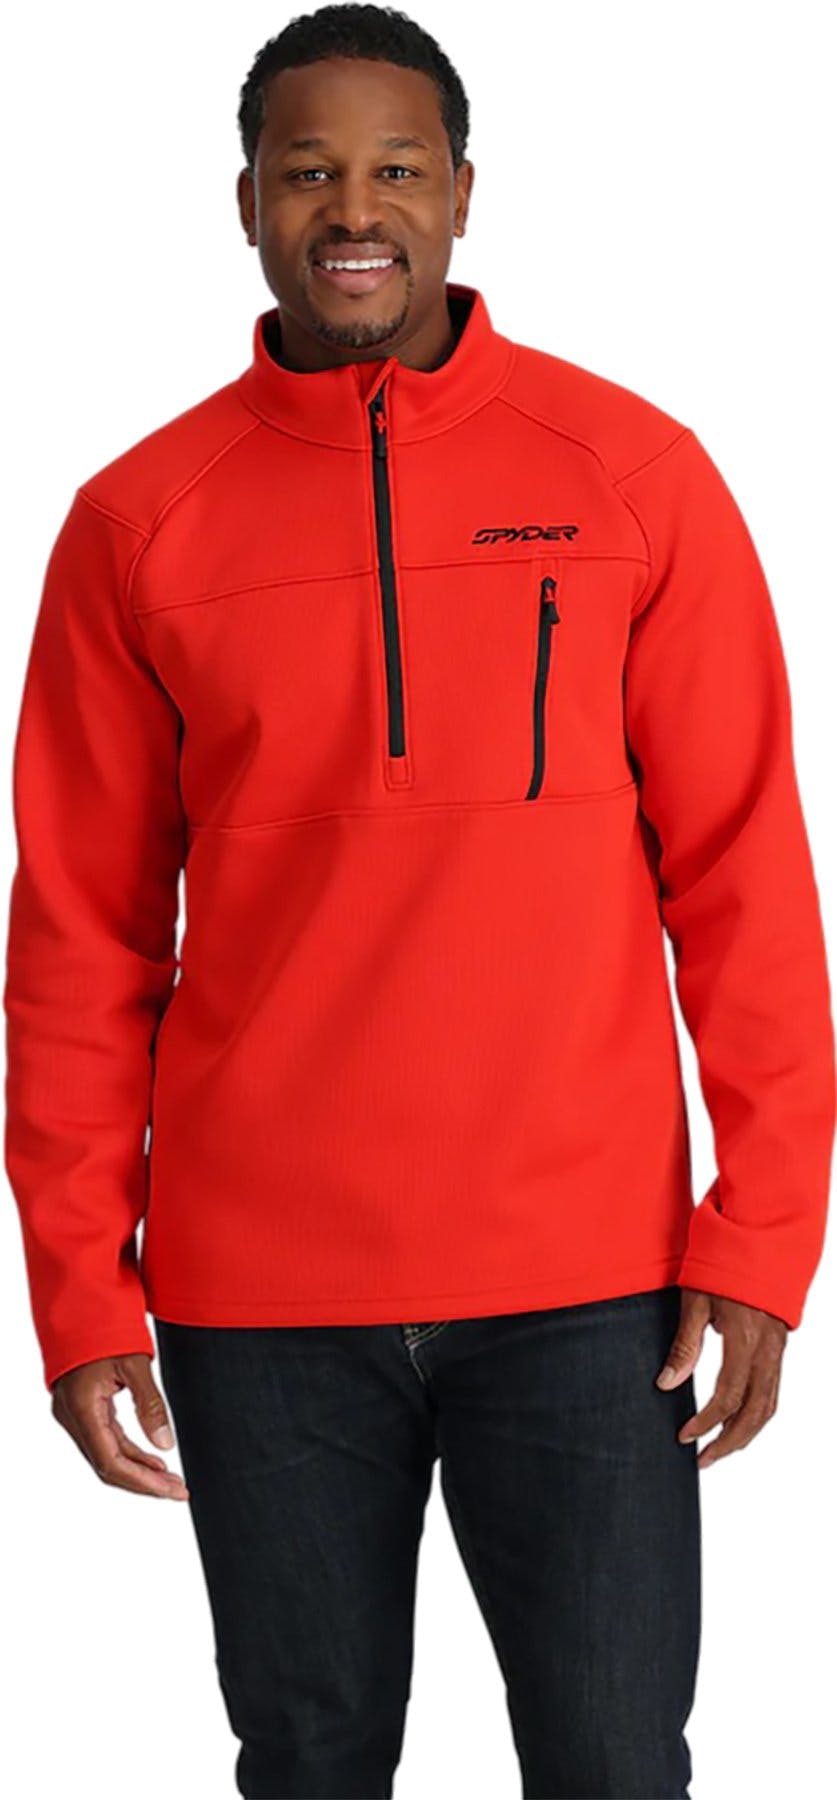 Product image for Encore Half Zip Fleece Jacket - Men's